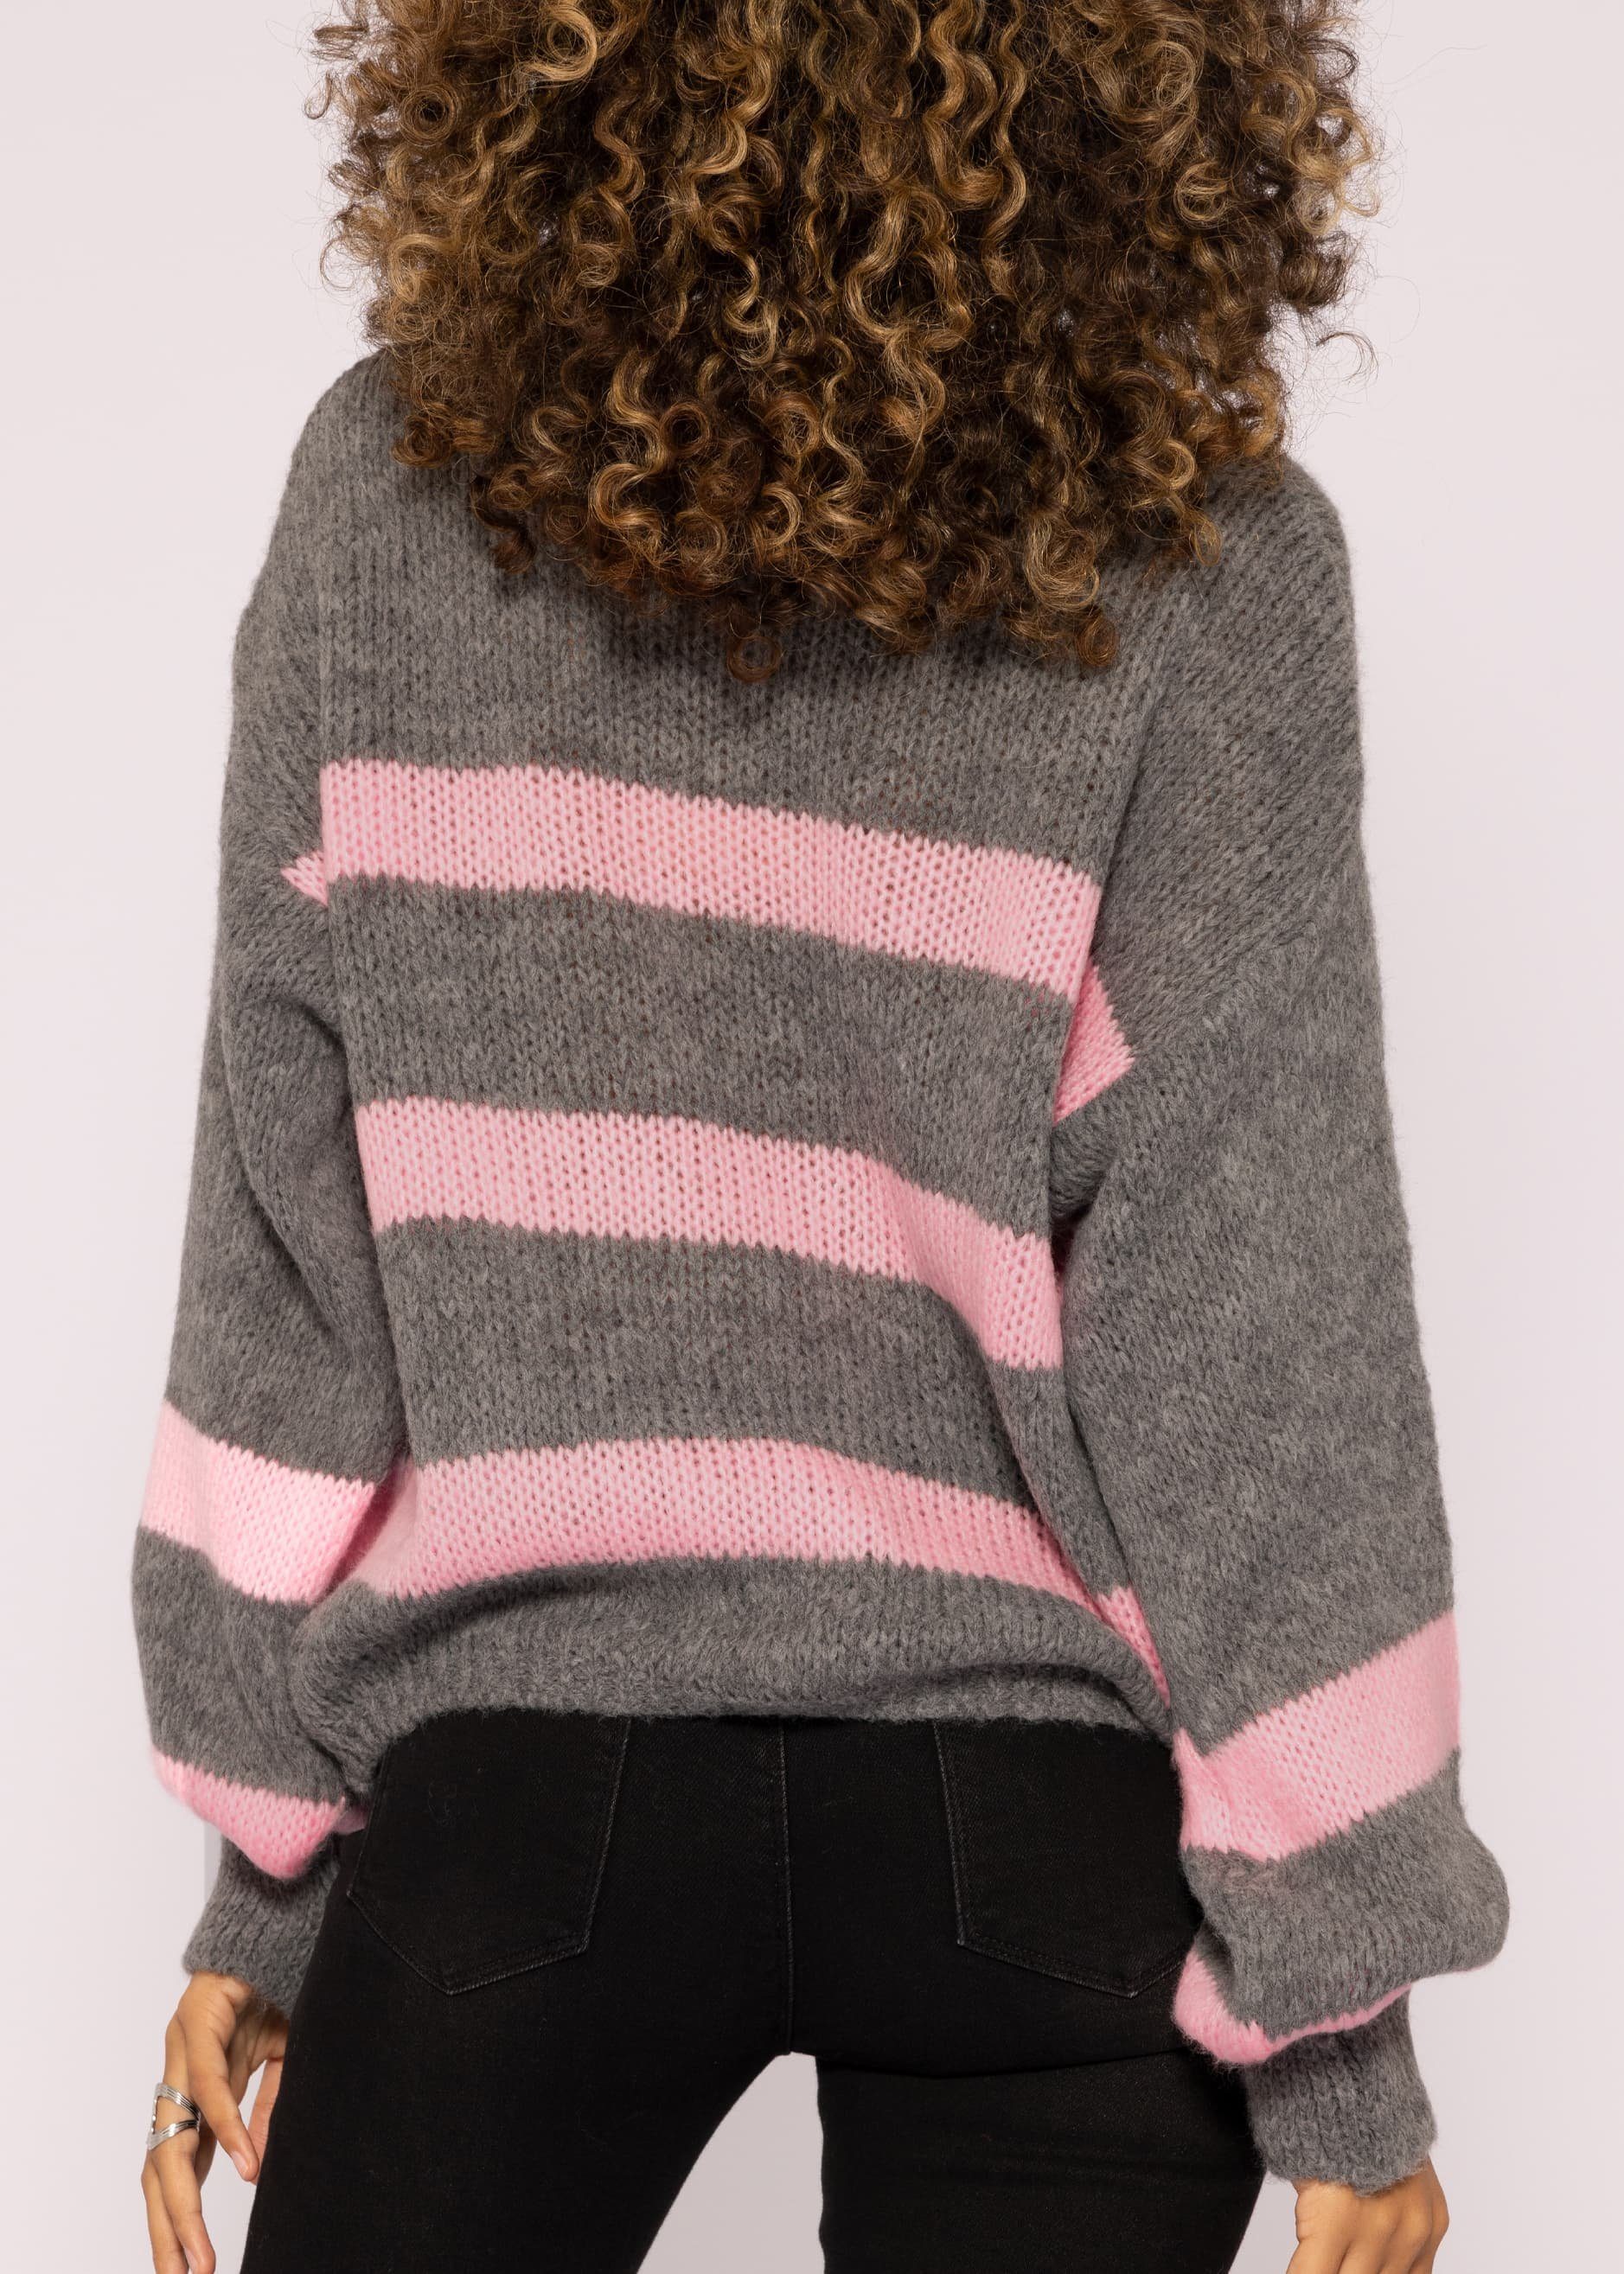 SASSYCLASSY Strickpullover Oversize Pullover Damen in weichem und Lässiger Made Grau V-Ausschnitt, mit Strickpullover Grobstrick aus Italy Streifen